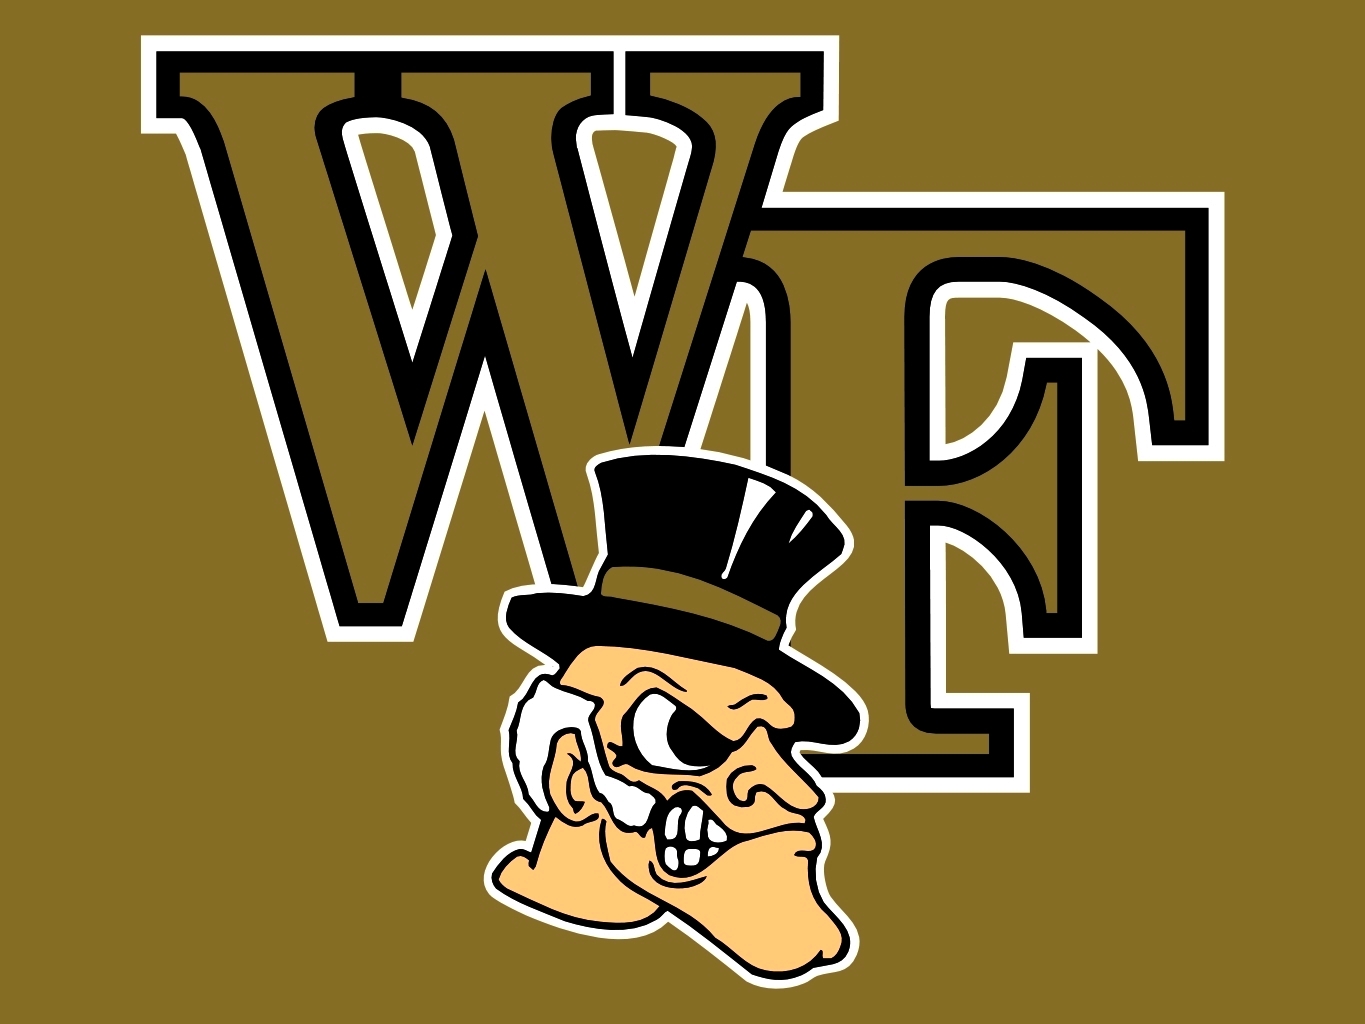 wake forest university logo